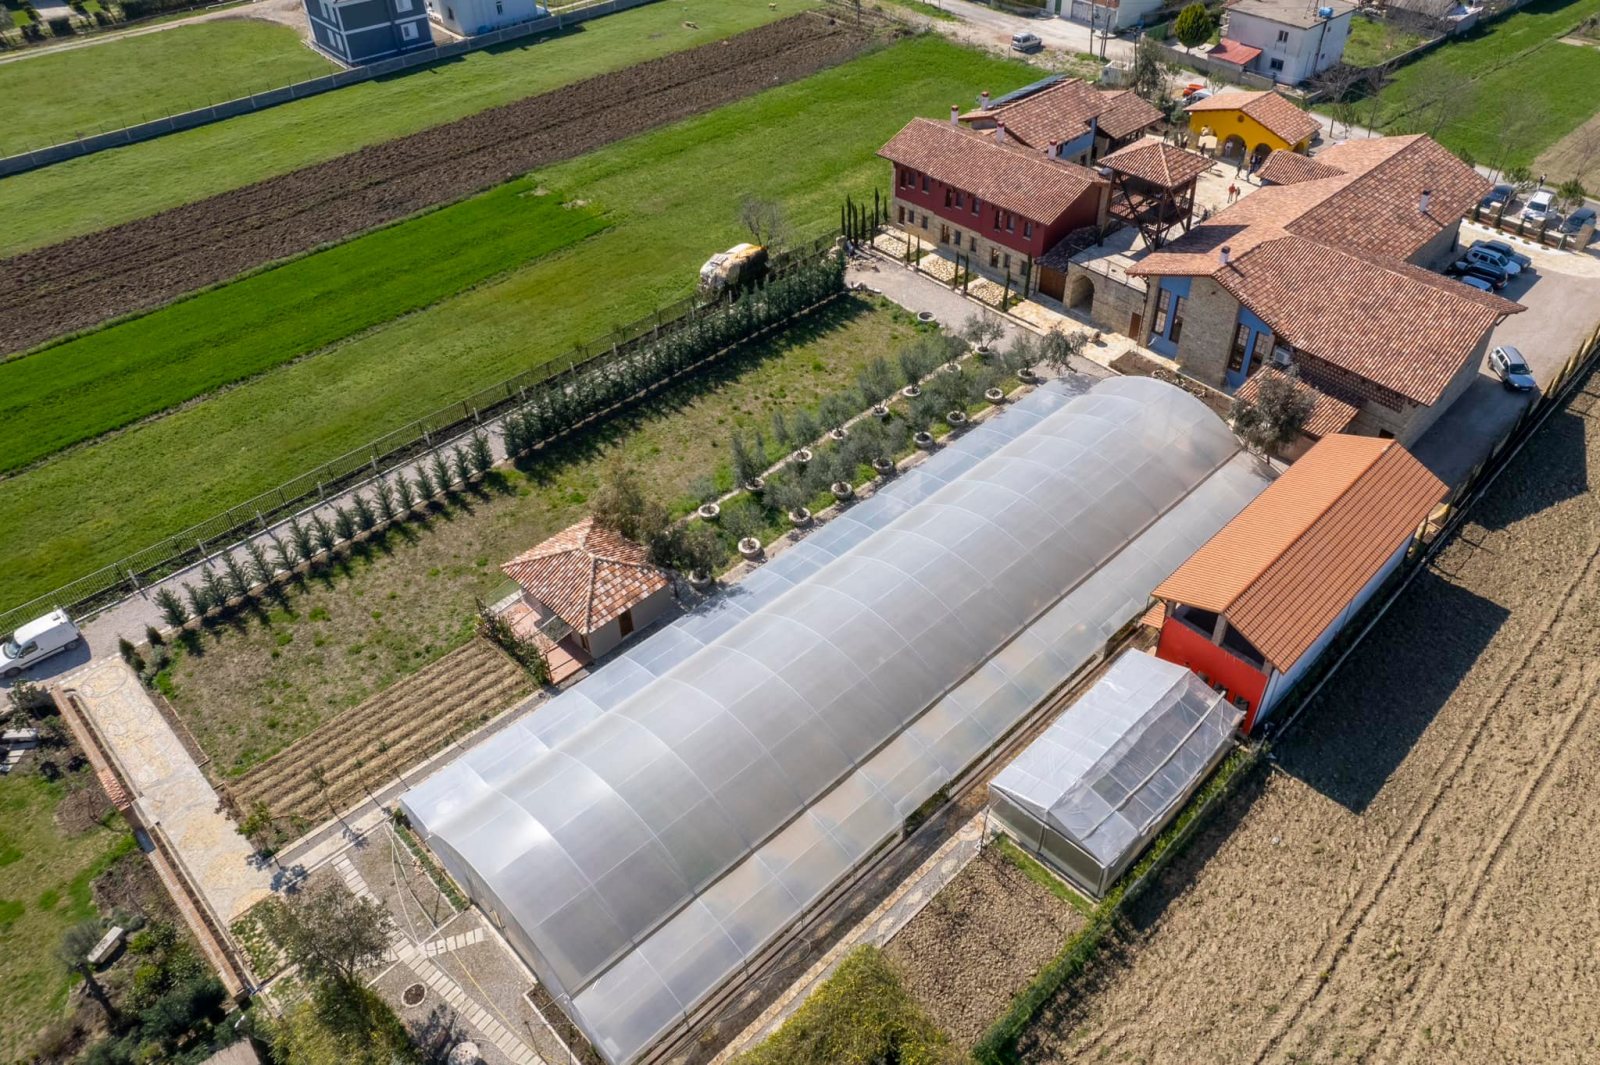 Krifca: Historia e suksesit të agroturizmit flet vetë në çdo cep të Shqipërisë